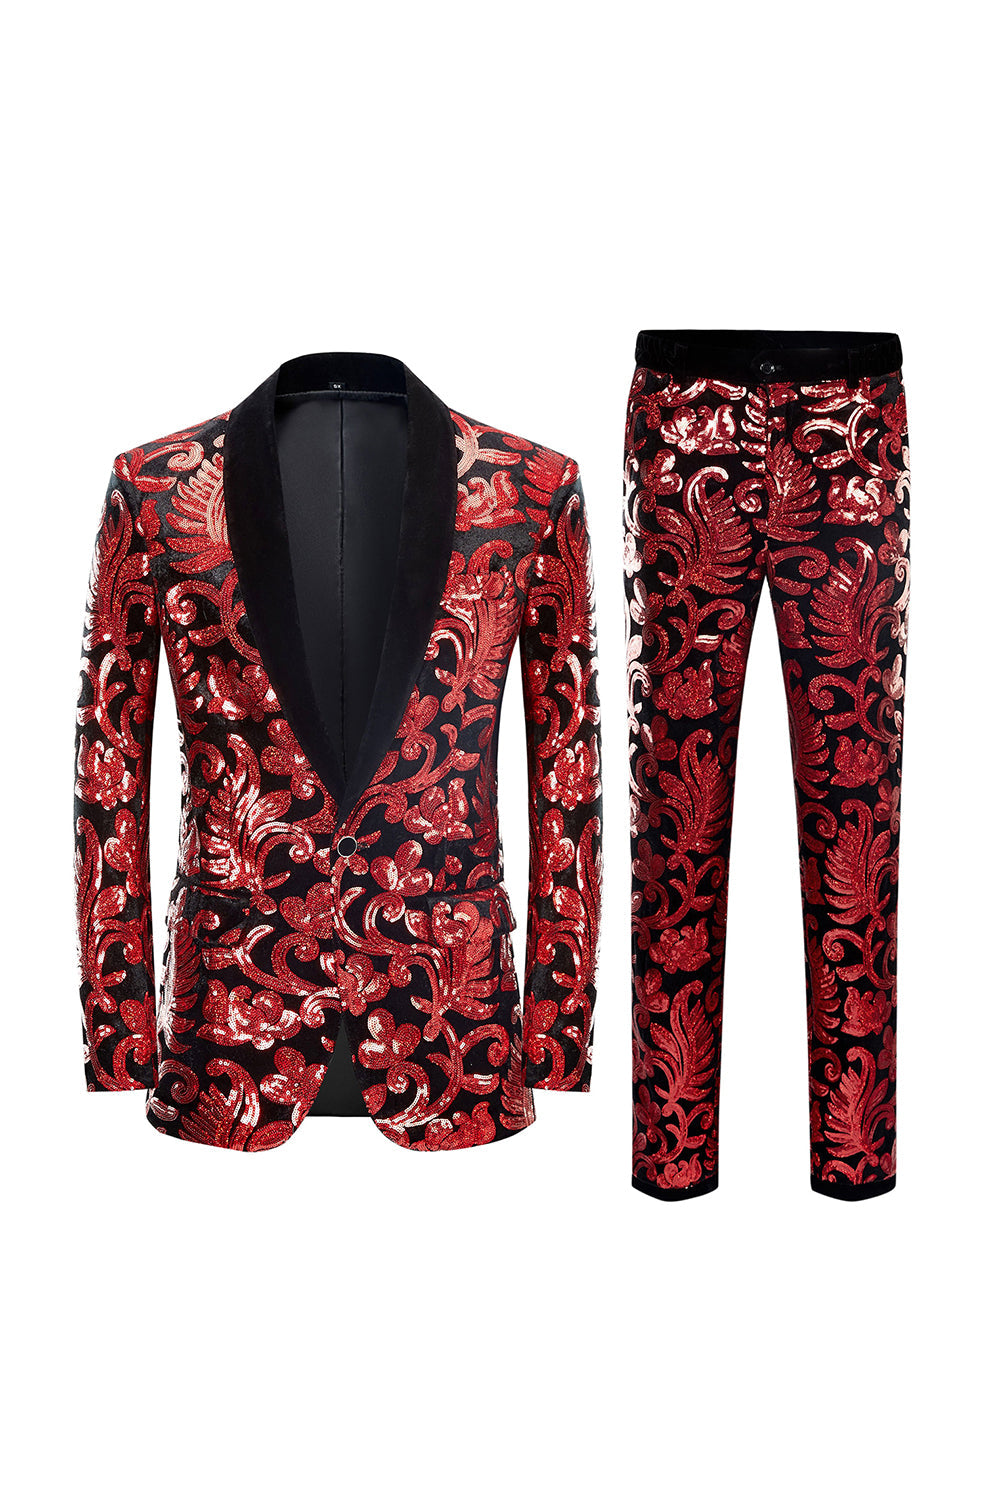 Mens 2 Piece Suit Embroidered Tuxedos Jacquard Suits Floral Prom Tux – MOGU  SUIT